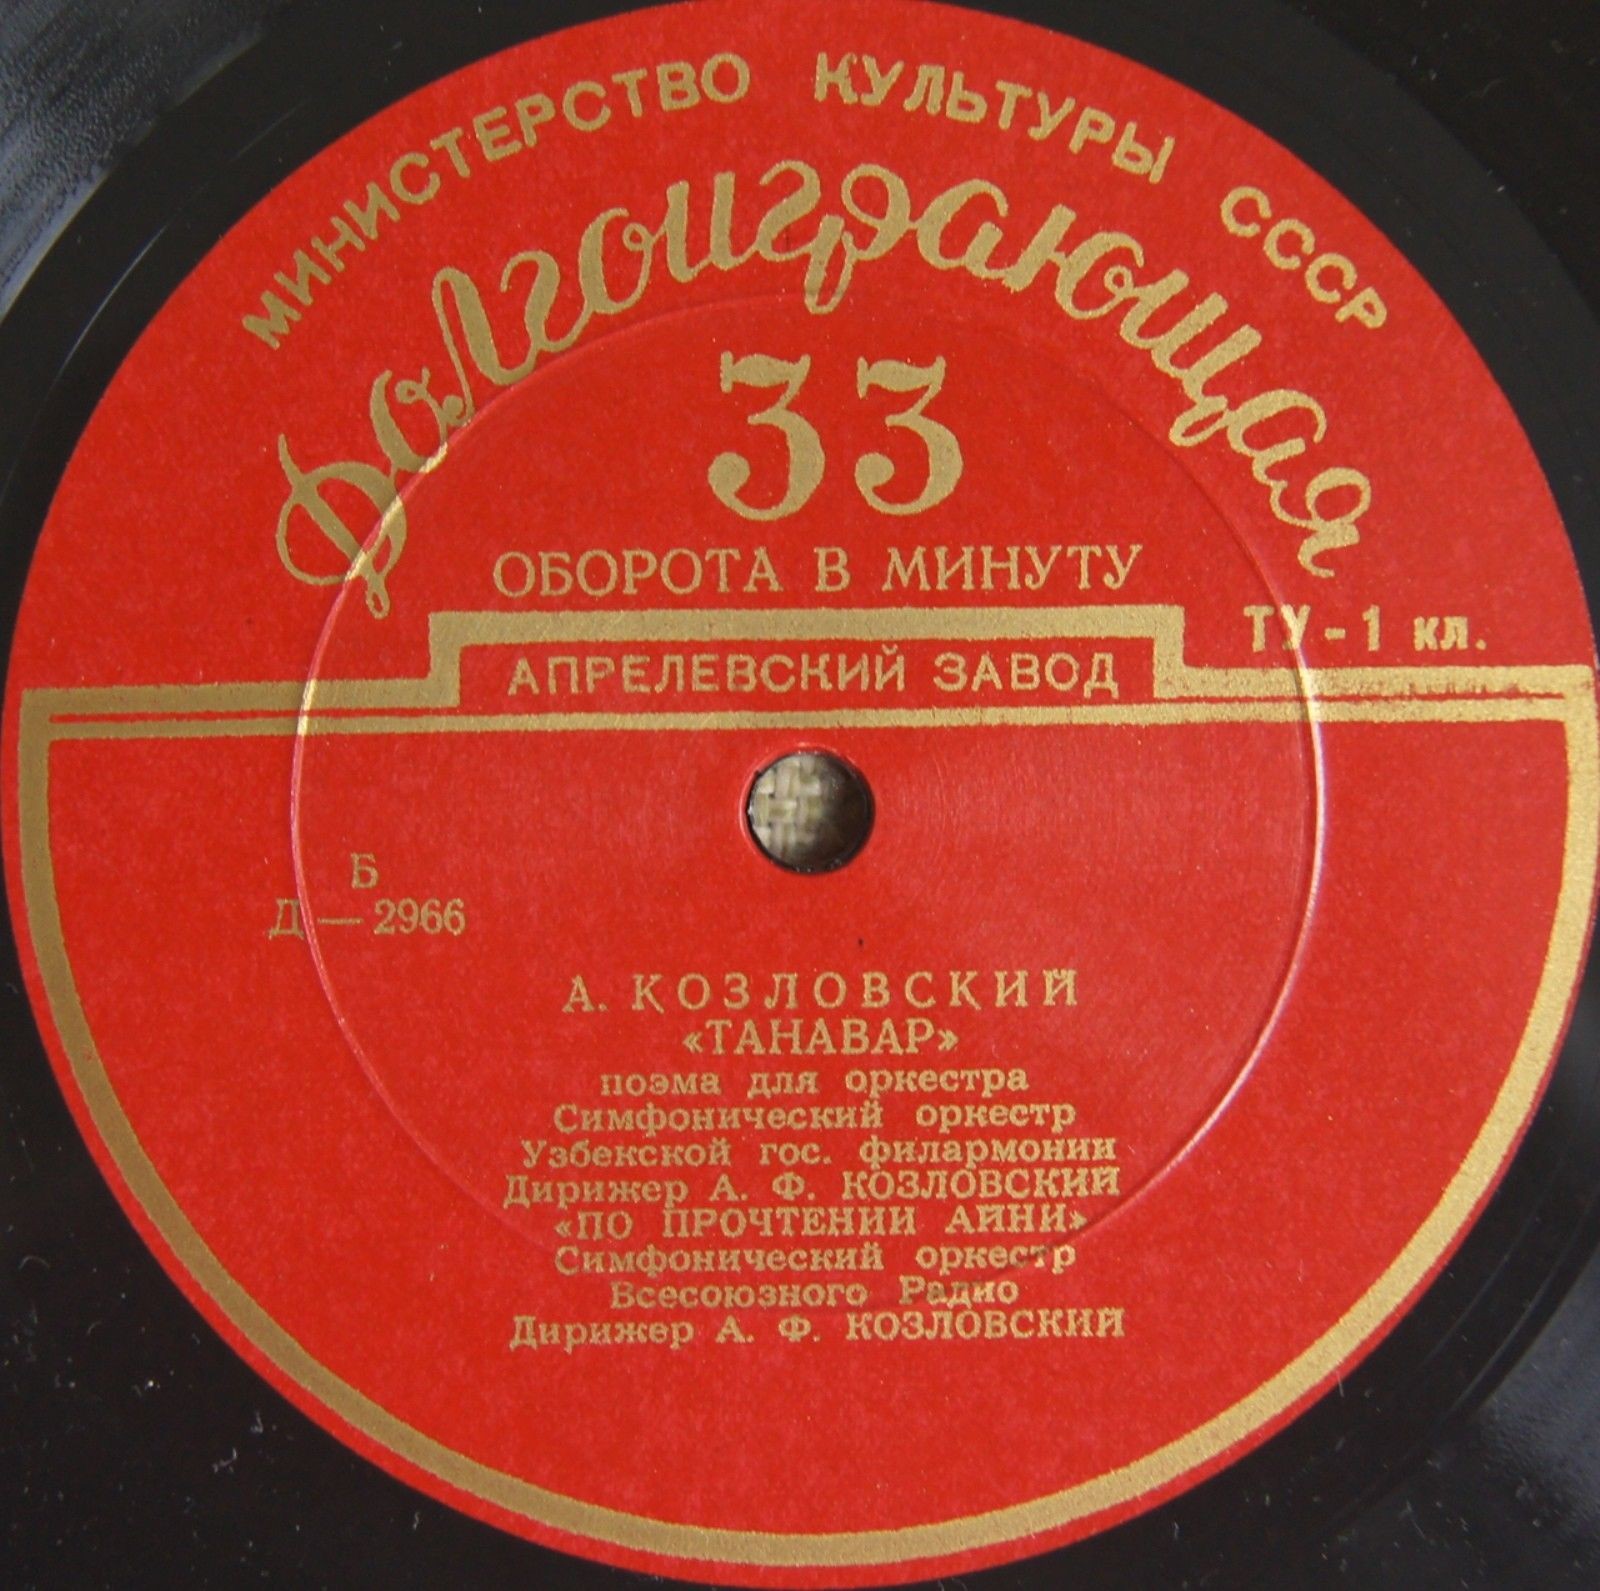 А. КОЗЛОВСКИЙ (1905) / Г. МУШЕЛЬ (1909)